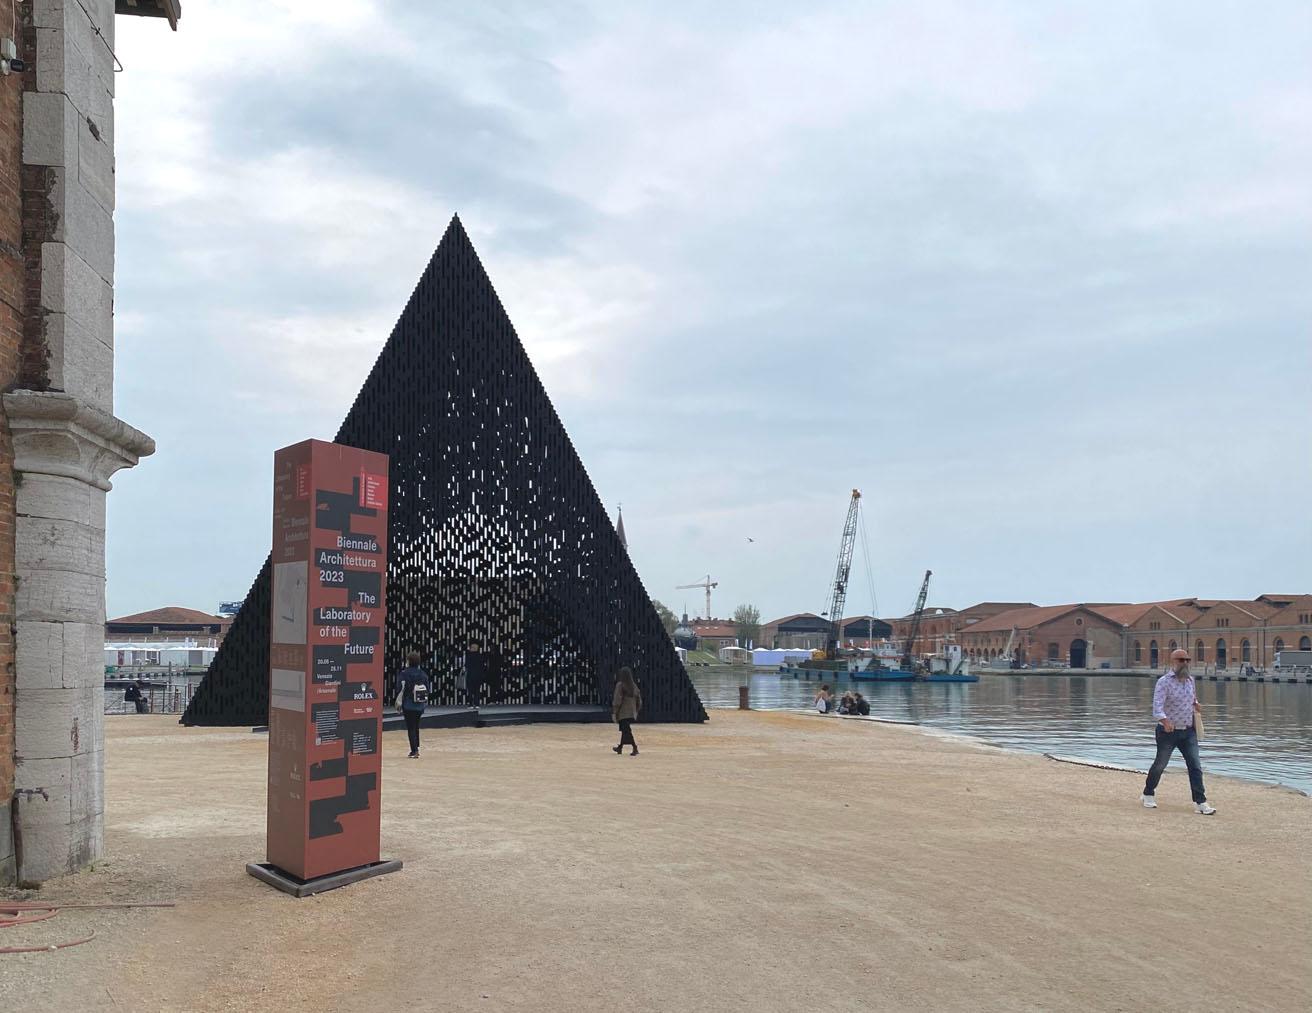 アルセナーレ会場の奥に建てられたパビリオンは、ロンドンからガーナにベースを移したデイビッド・アジャイの作品。〈Kwaee〉という作品名はガーナで使われるTwi語で「森」を意味する。photo_Megumi Yamashita
